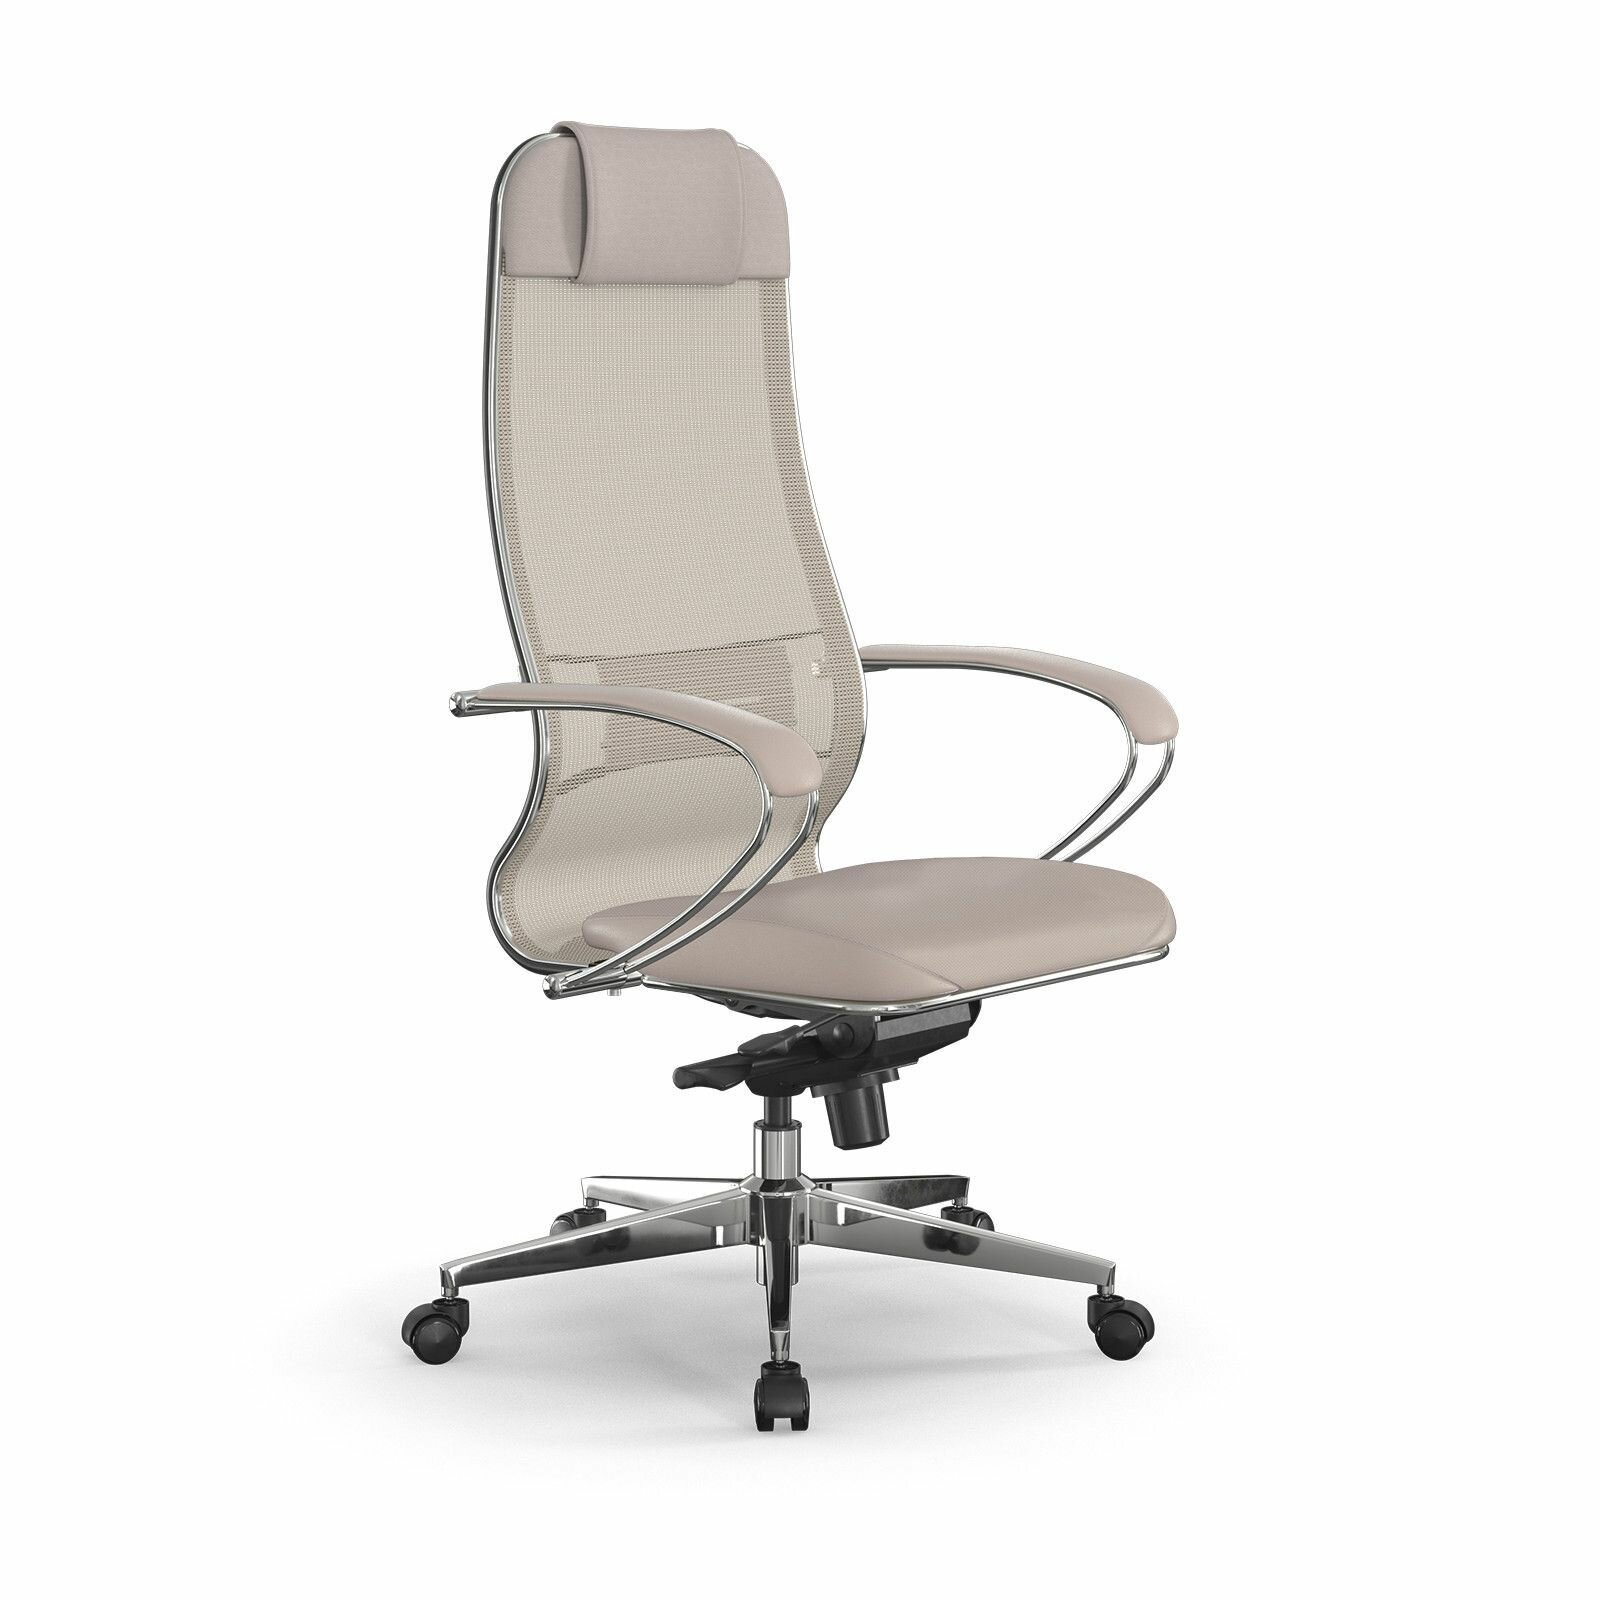 Компьютерное офисное кресло Metta Samurai Comfort S Infinity Easy Clean светло-бежевое